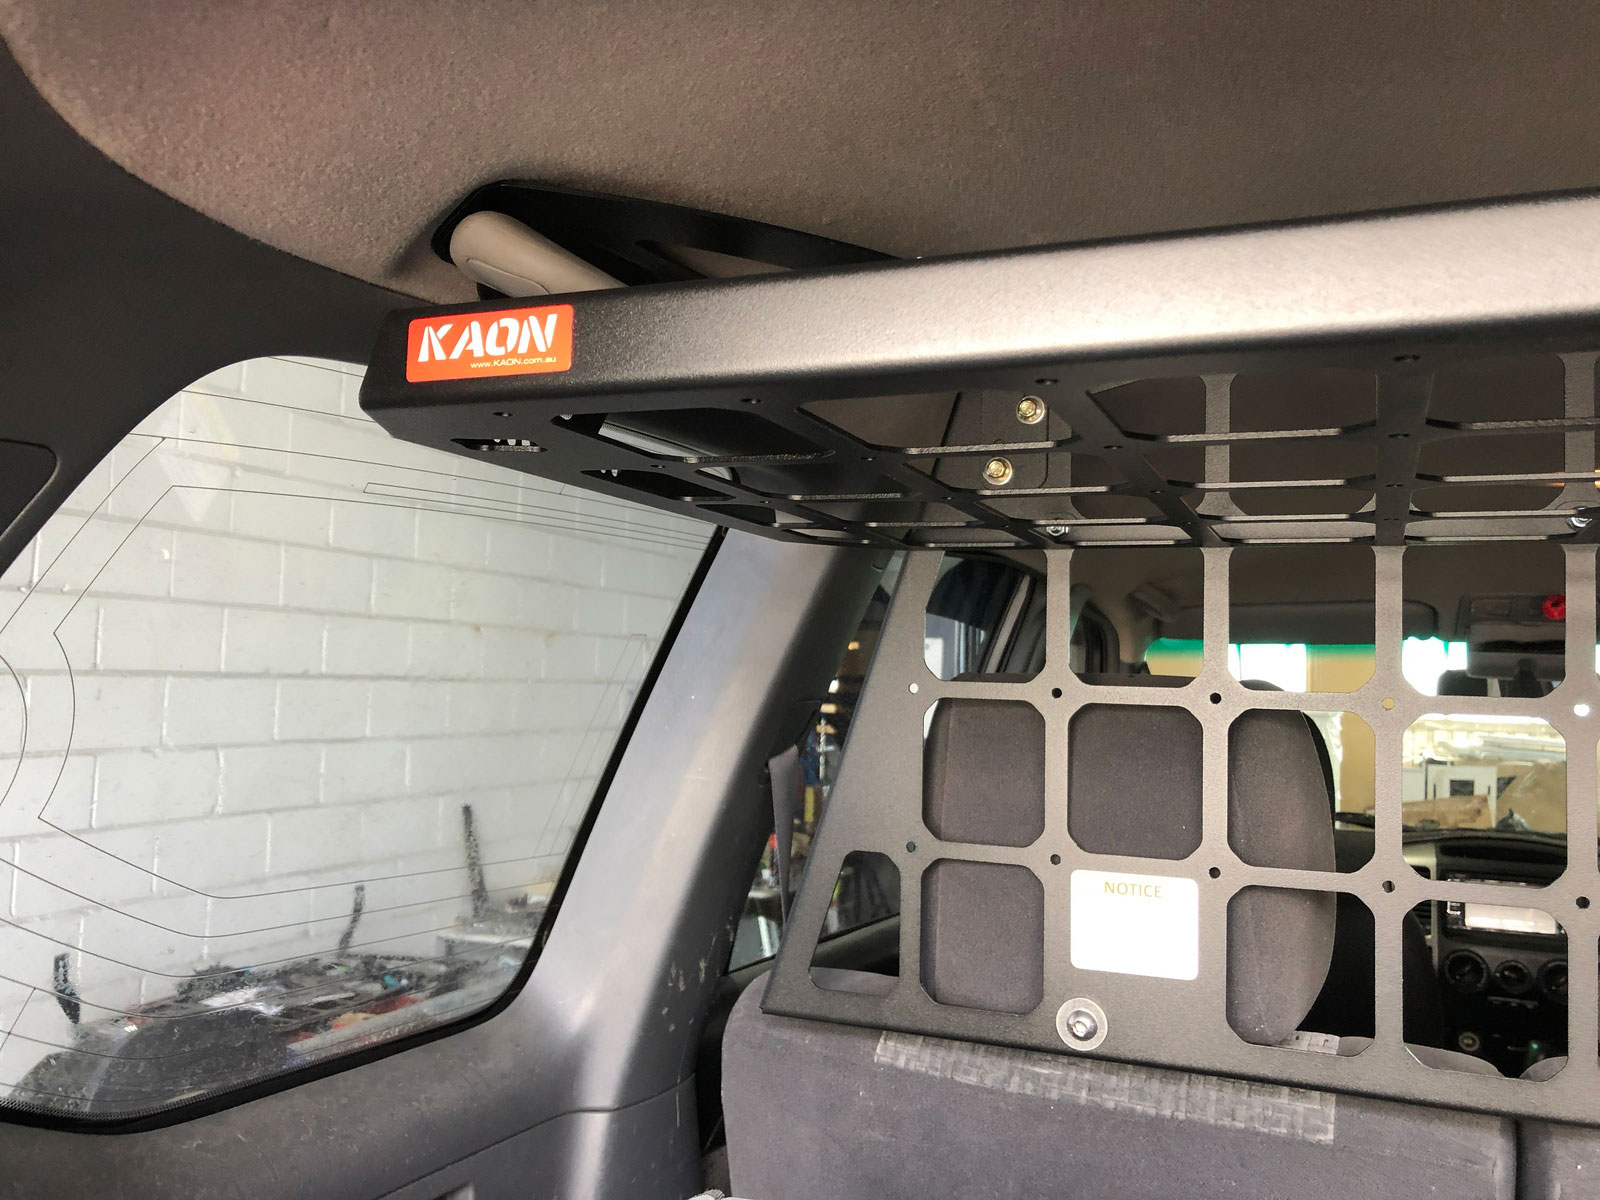  Barrier Shelf to suit Toyota Prado 120 / Lexus GX 470